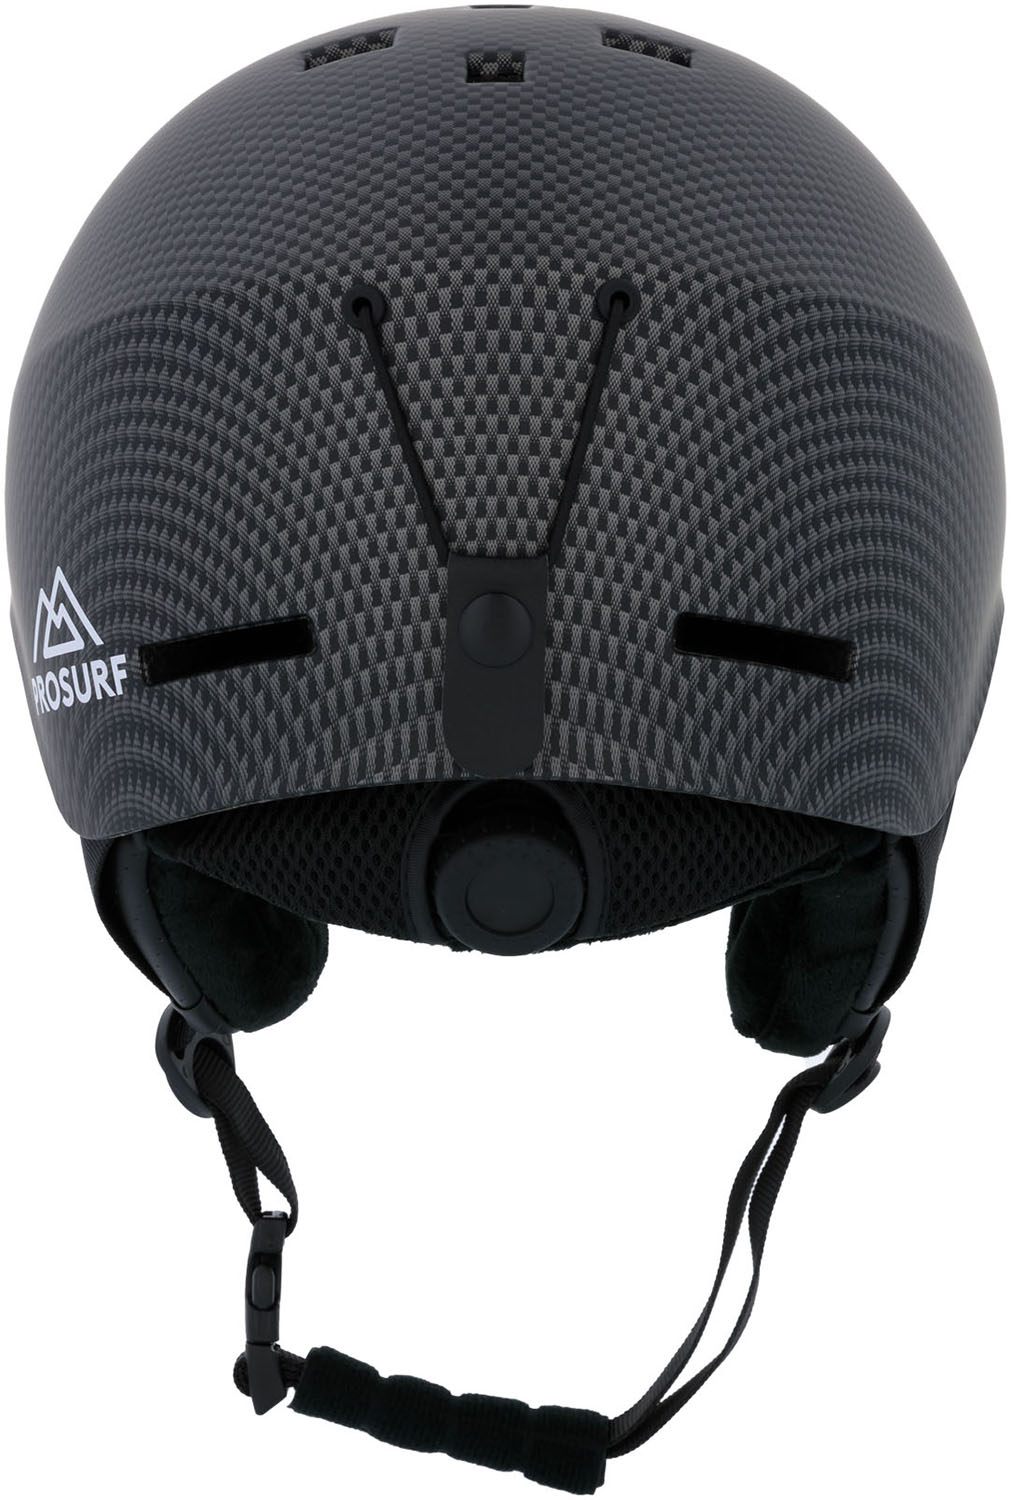 Шлем ProSurf Carbon Black